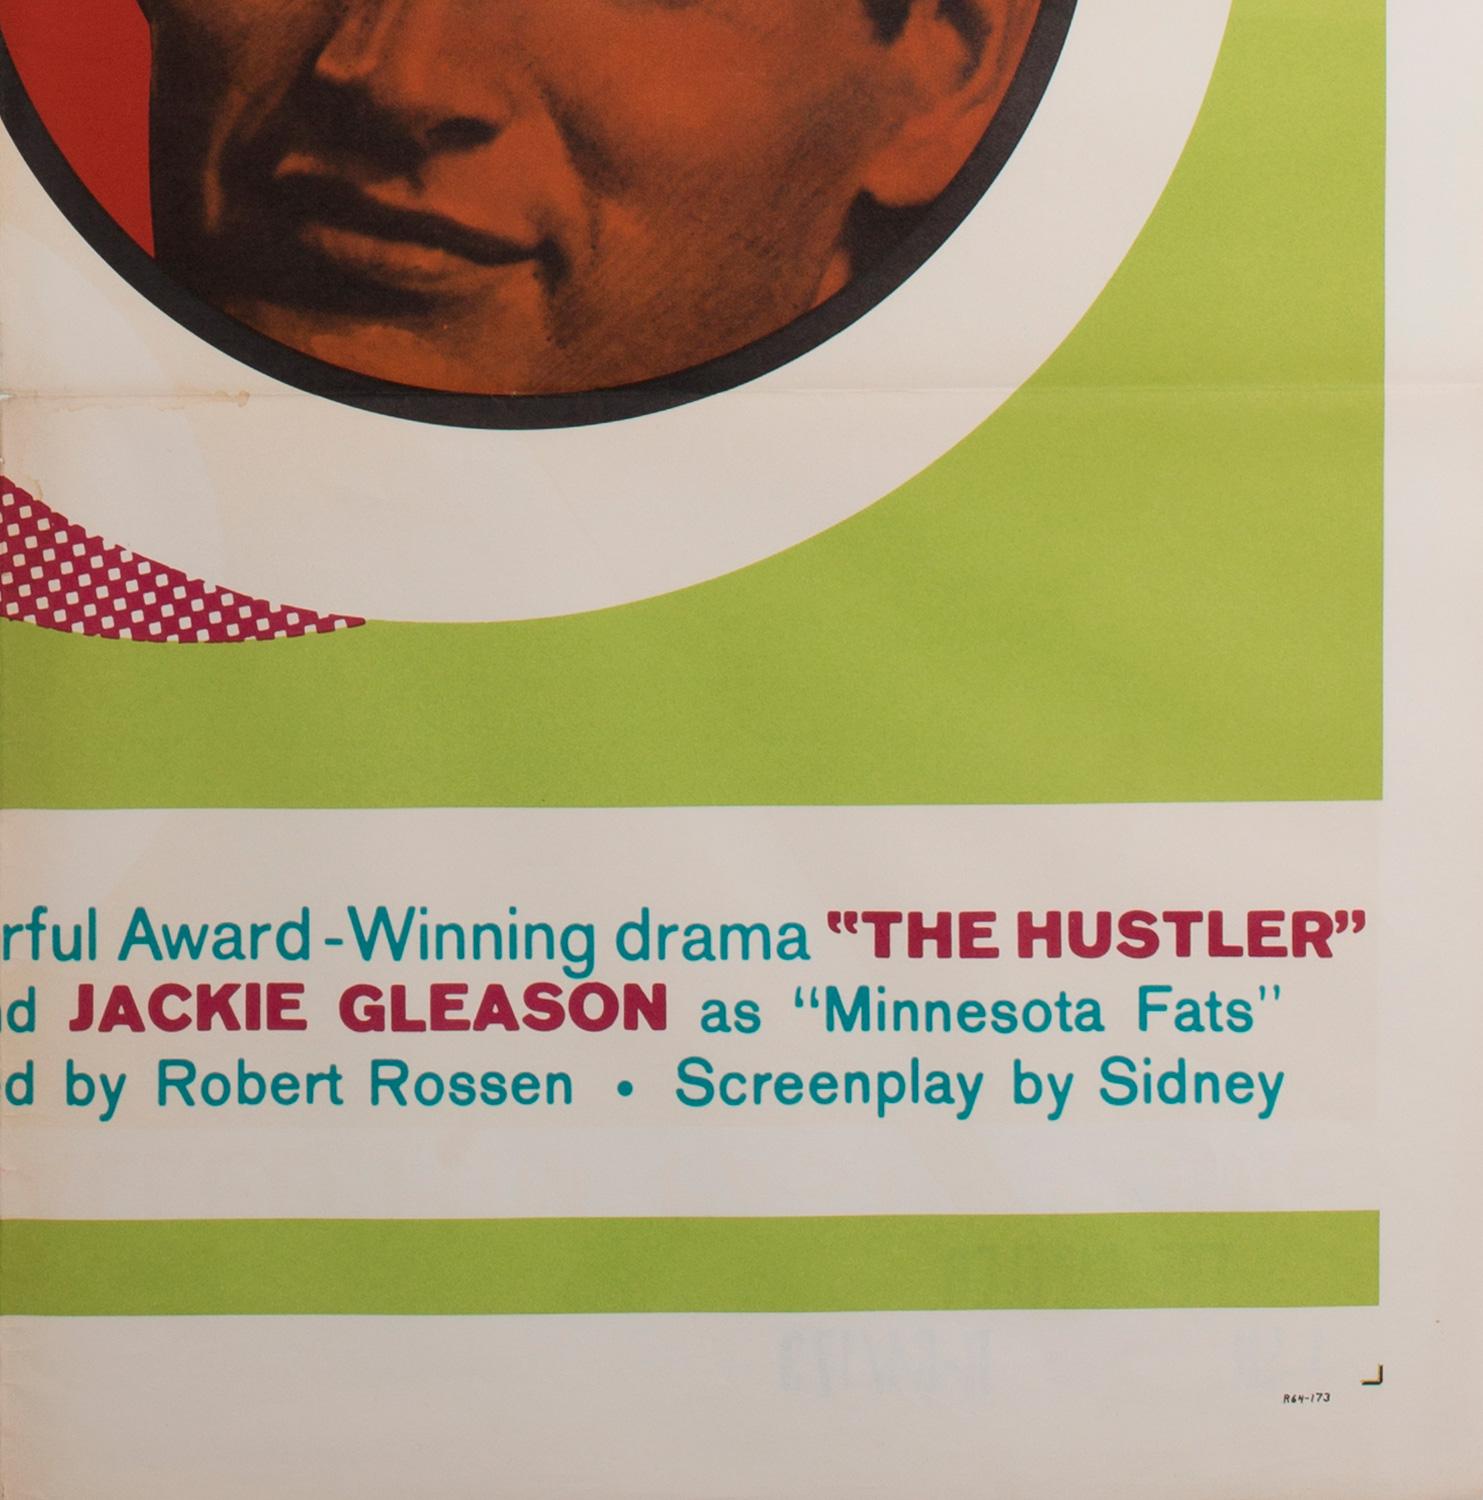 The Hustler Original US Film Movie Poster, 1964 For Sale 2